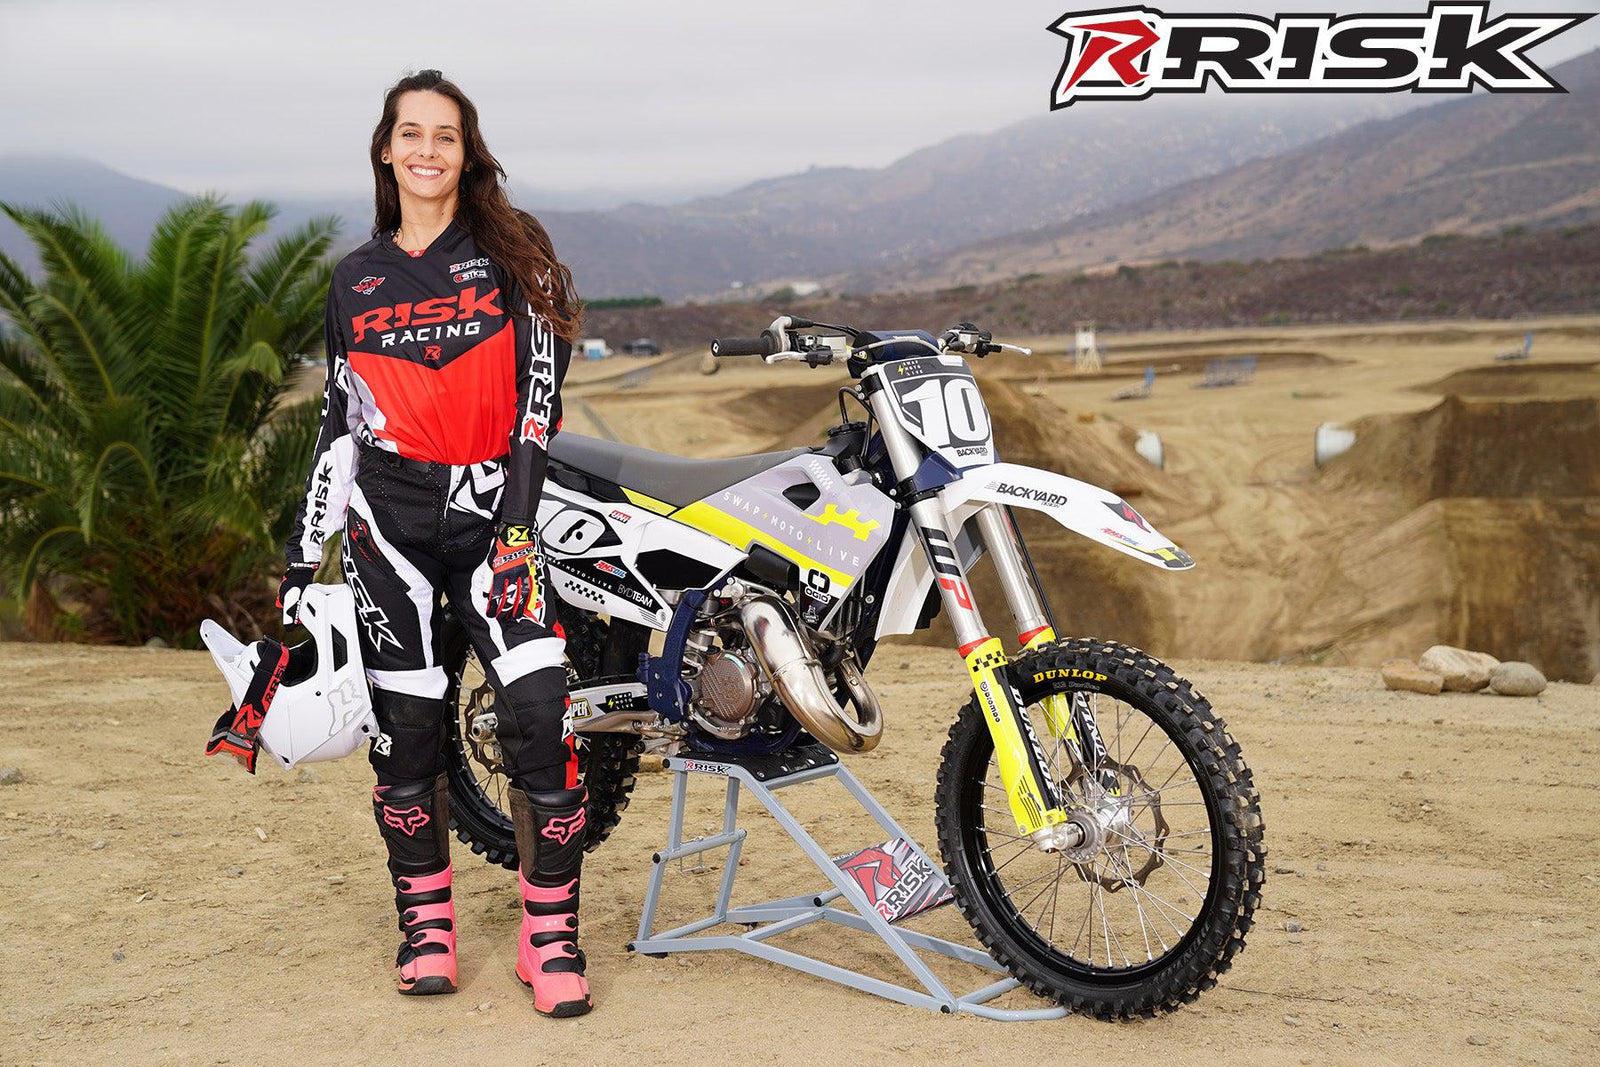 La modelo de moto de Risk Racing de octubre, Jessica Victorino, posa con varios bikinis y camisetas de Risk Racing junto a una moto de cross que está sentada en un soporte RR1-Ride-On de Risk Racing - Pose n.° 2